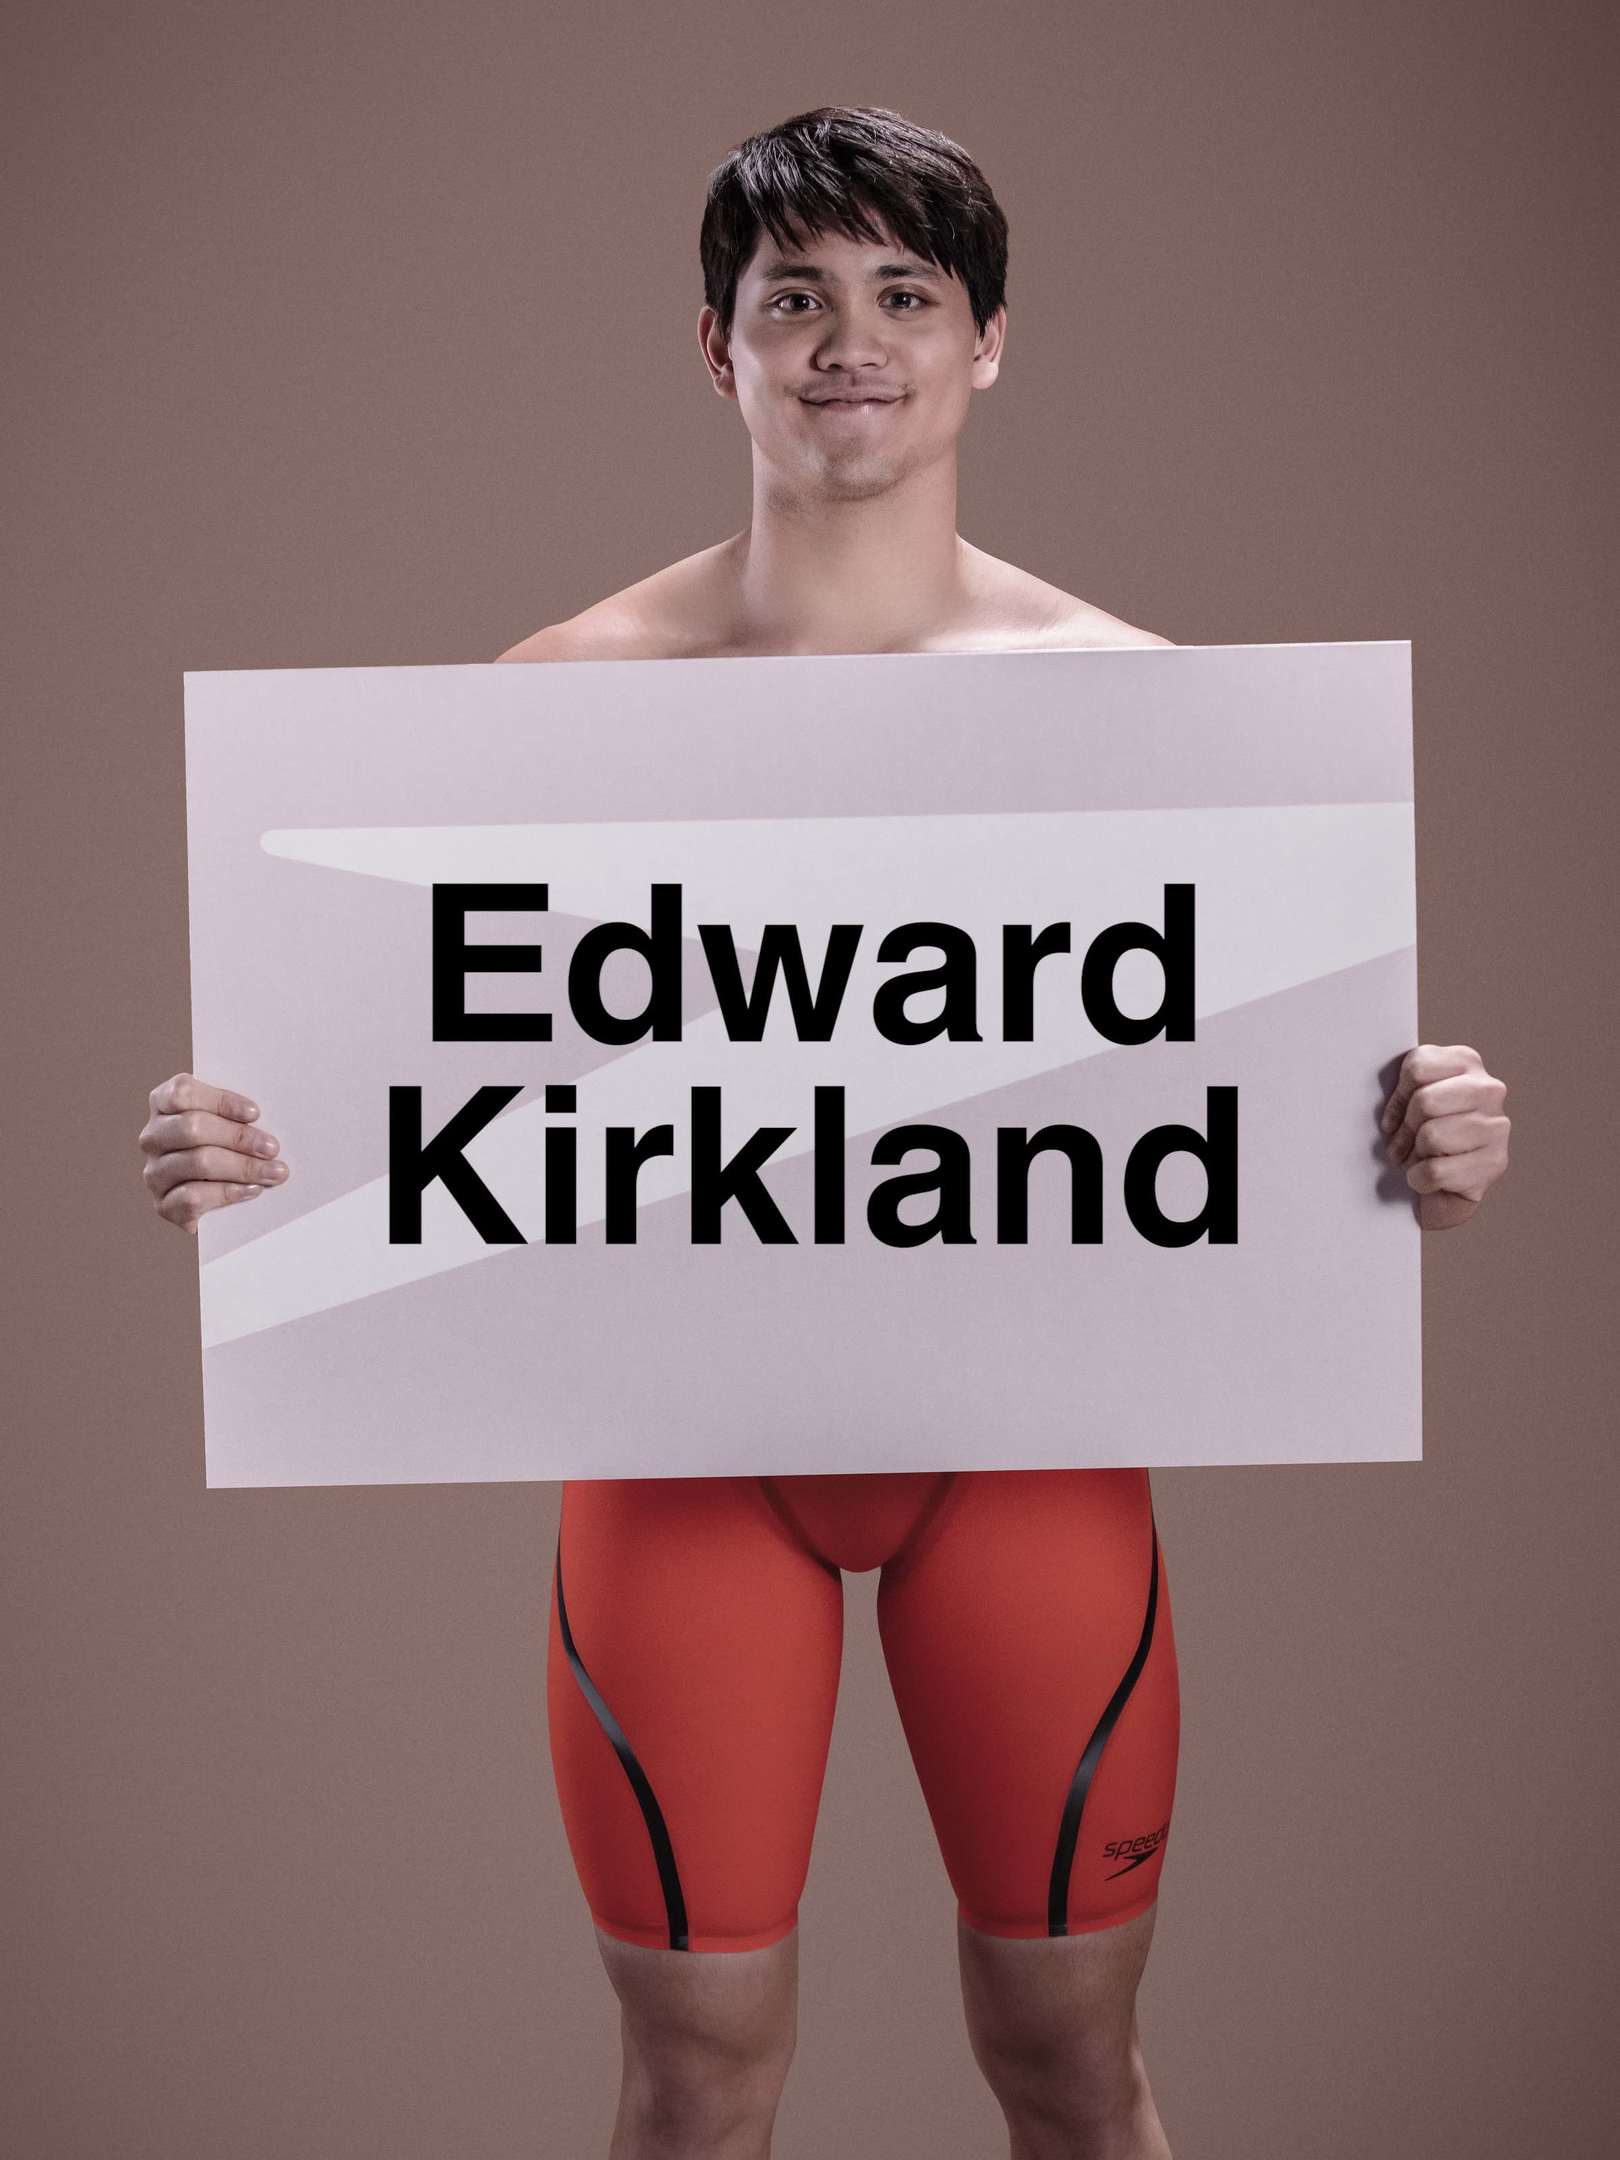 Joseph Schooling Signed Speedos Contest Winner - Edward Kirkland Joseph  Schooling Signed Speedos Contest Winner - Edward Kirkland